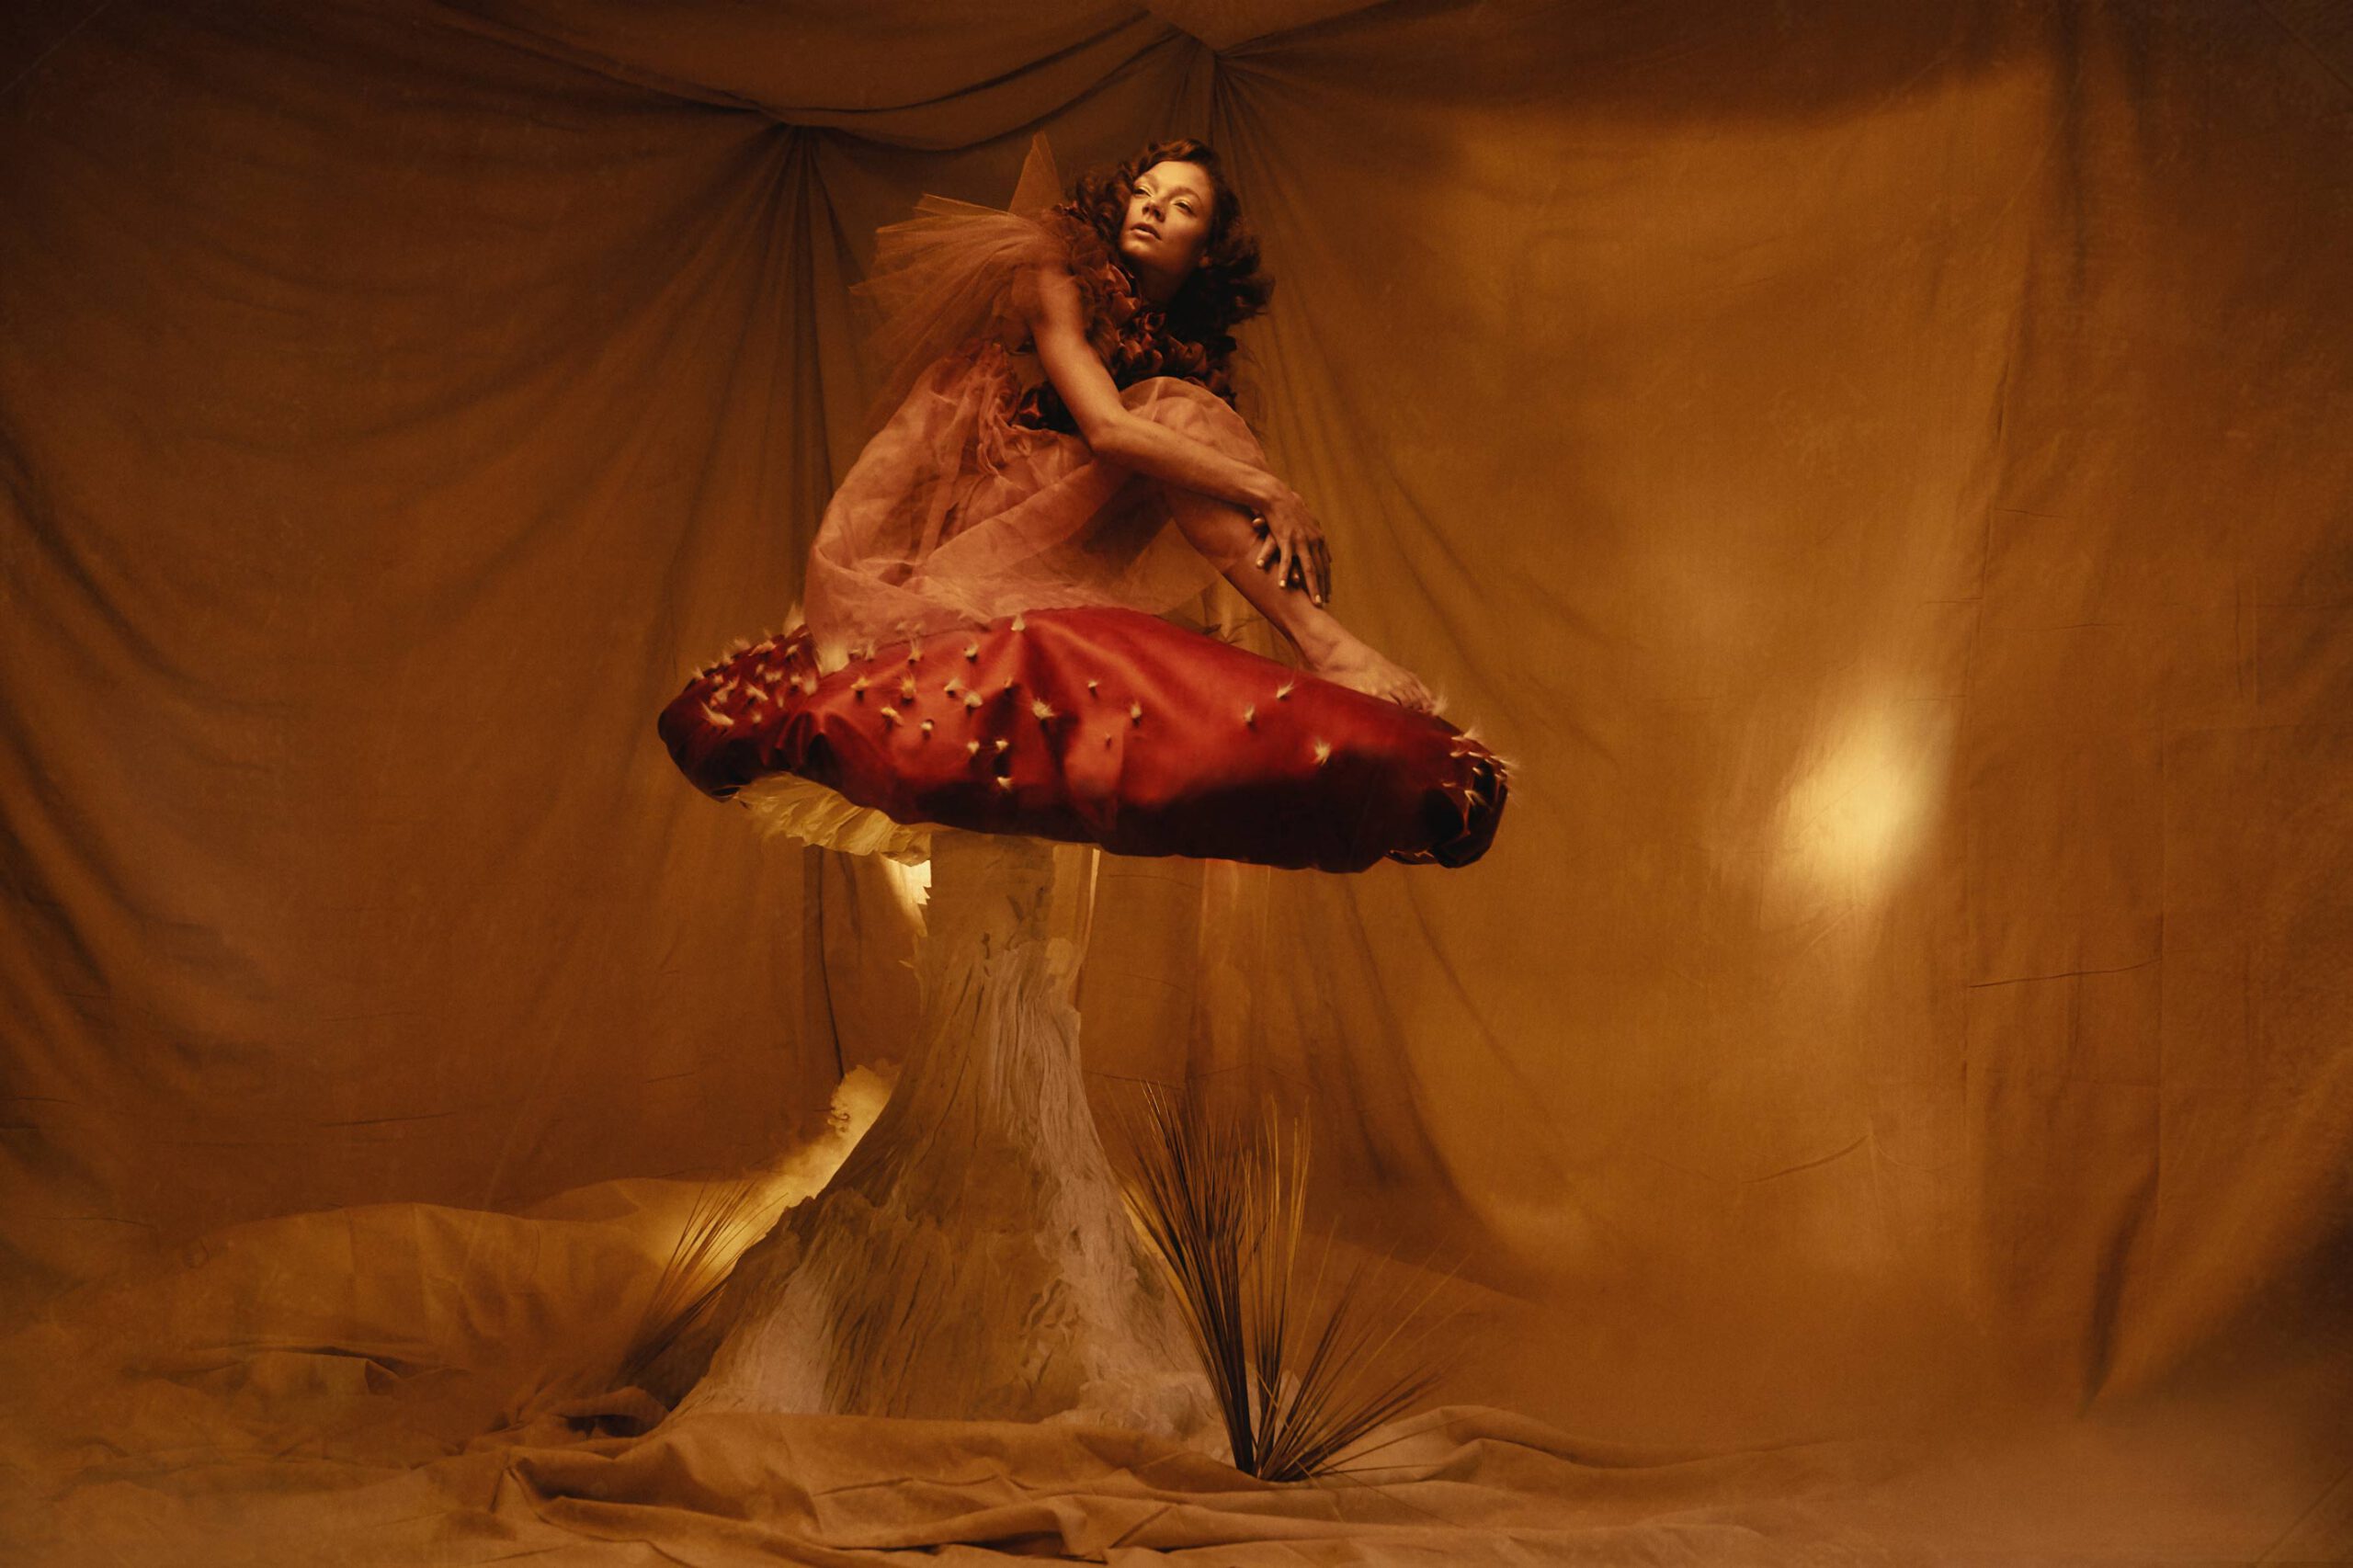 Dariane Sanche Photographe professionnelle spécialisée en photo editorial mode et creative. Photo d'une femme assise sur un champignon géant avec de la fumé au sol.